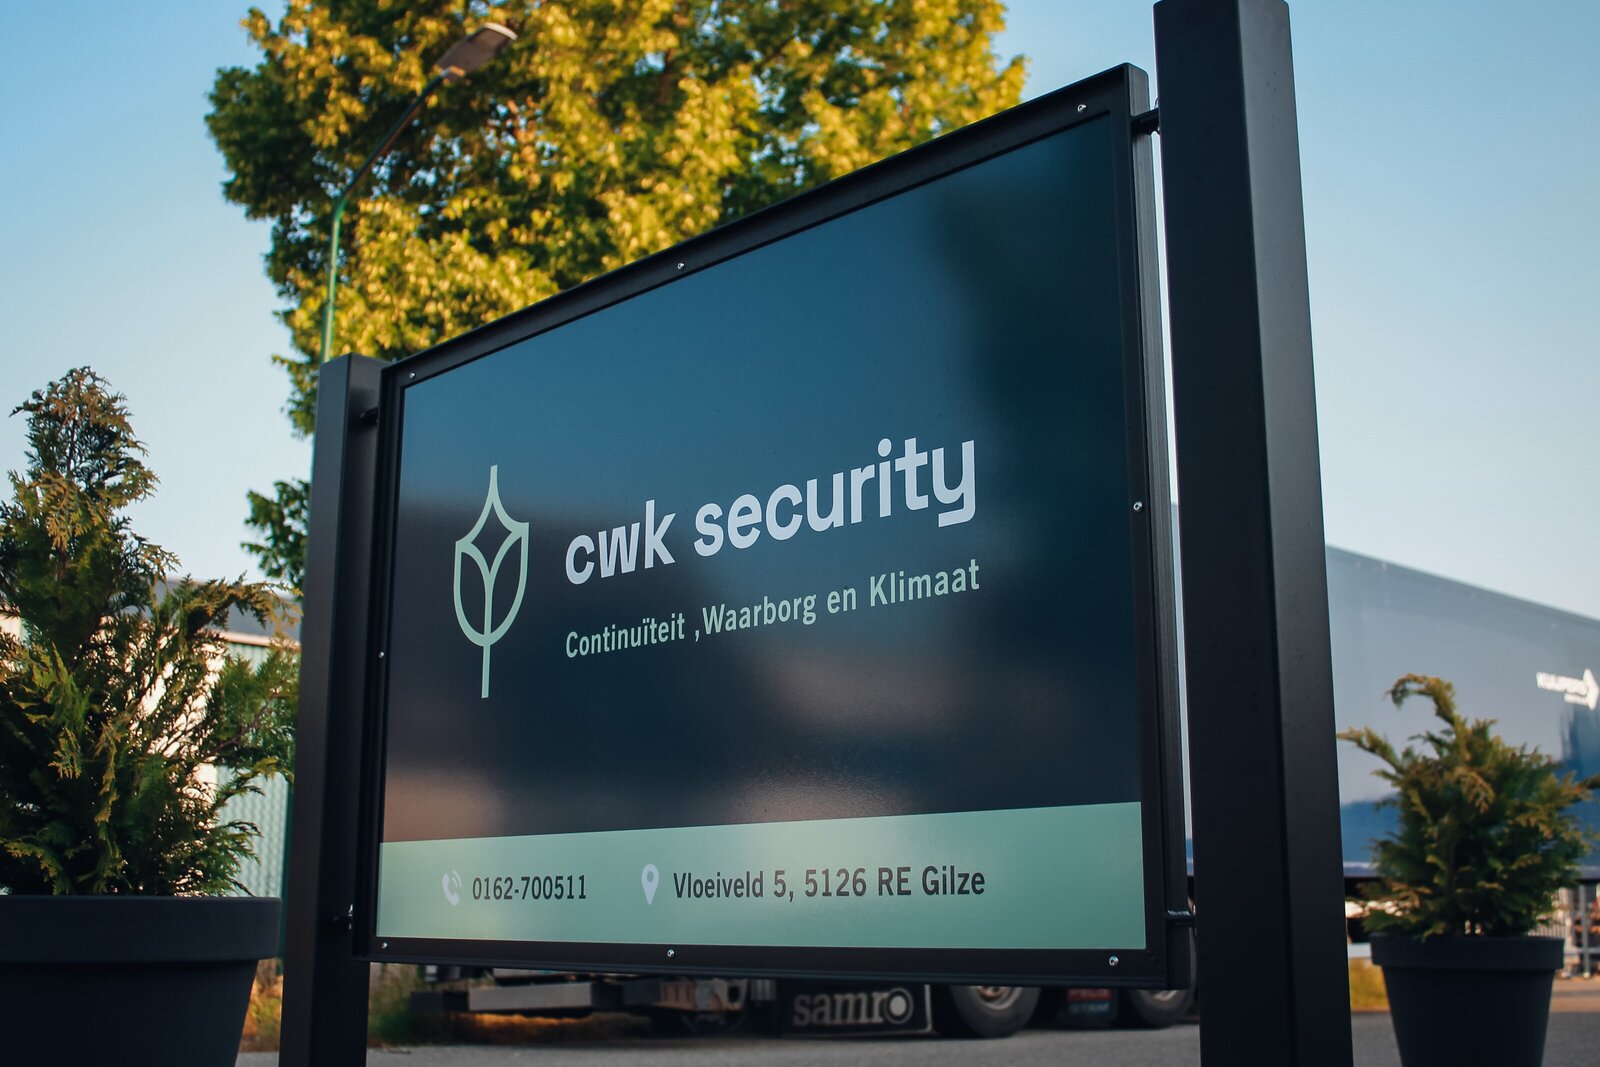 cwk security